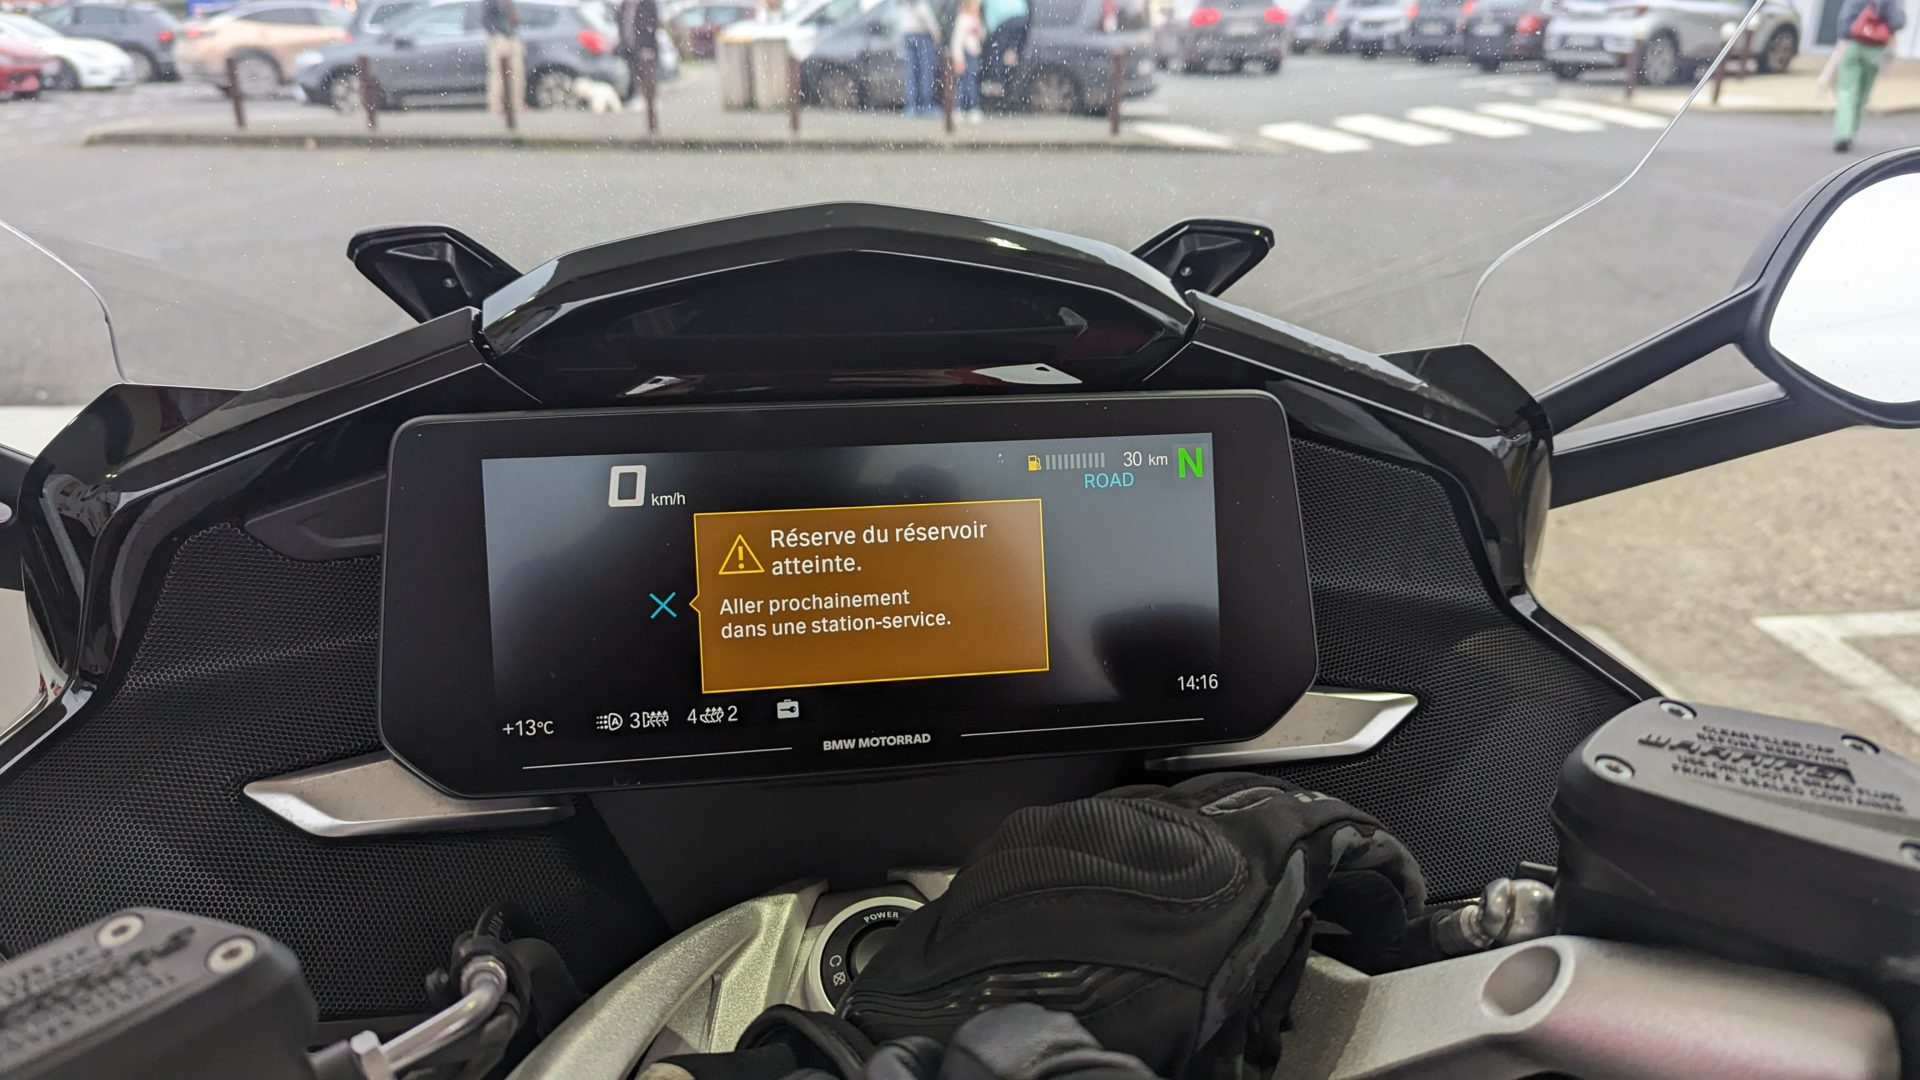 Zoom sur l'ordinateur de bord de la moto BMW K 1600 GT qui affiche qu'on arrive sur la réserve sur réservoir d'essence.